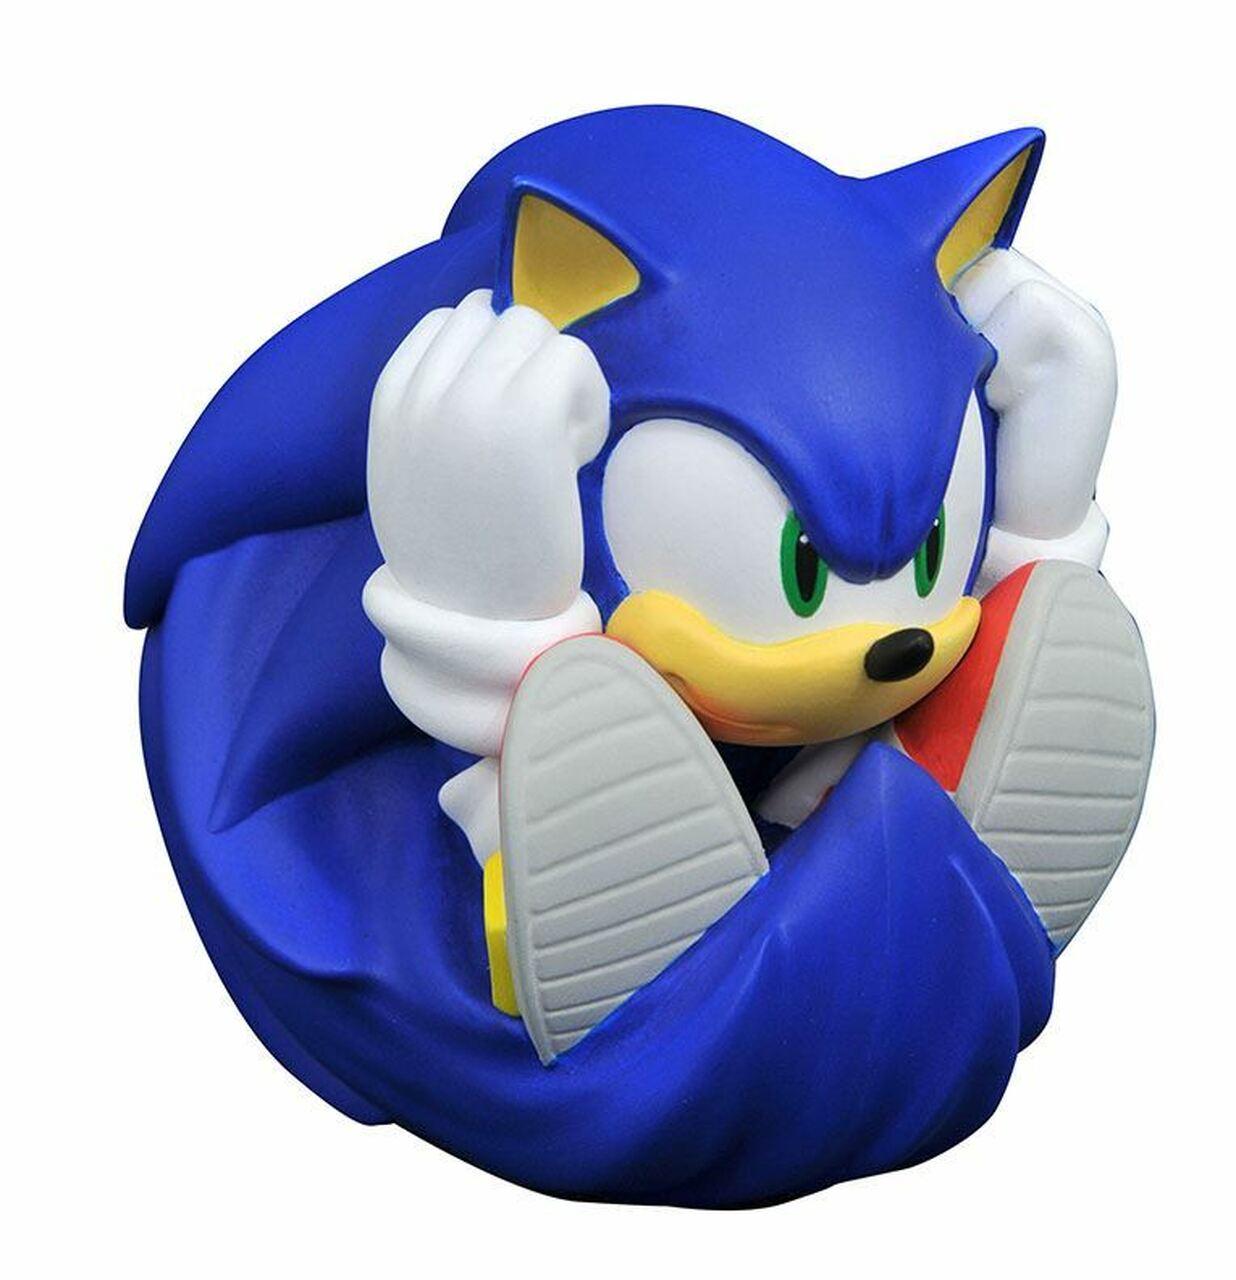 Sonic the Hedgehog 2 bonecos gigantes Eggman com Super Sonic de 6